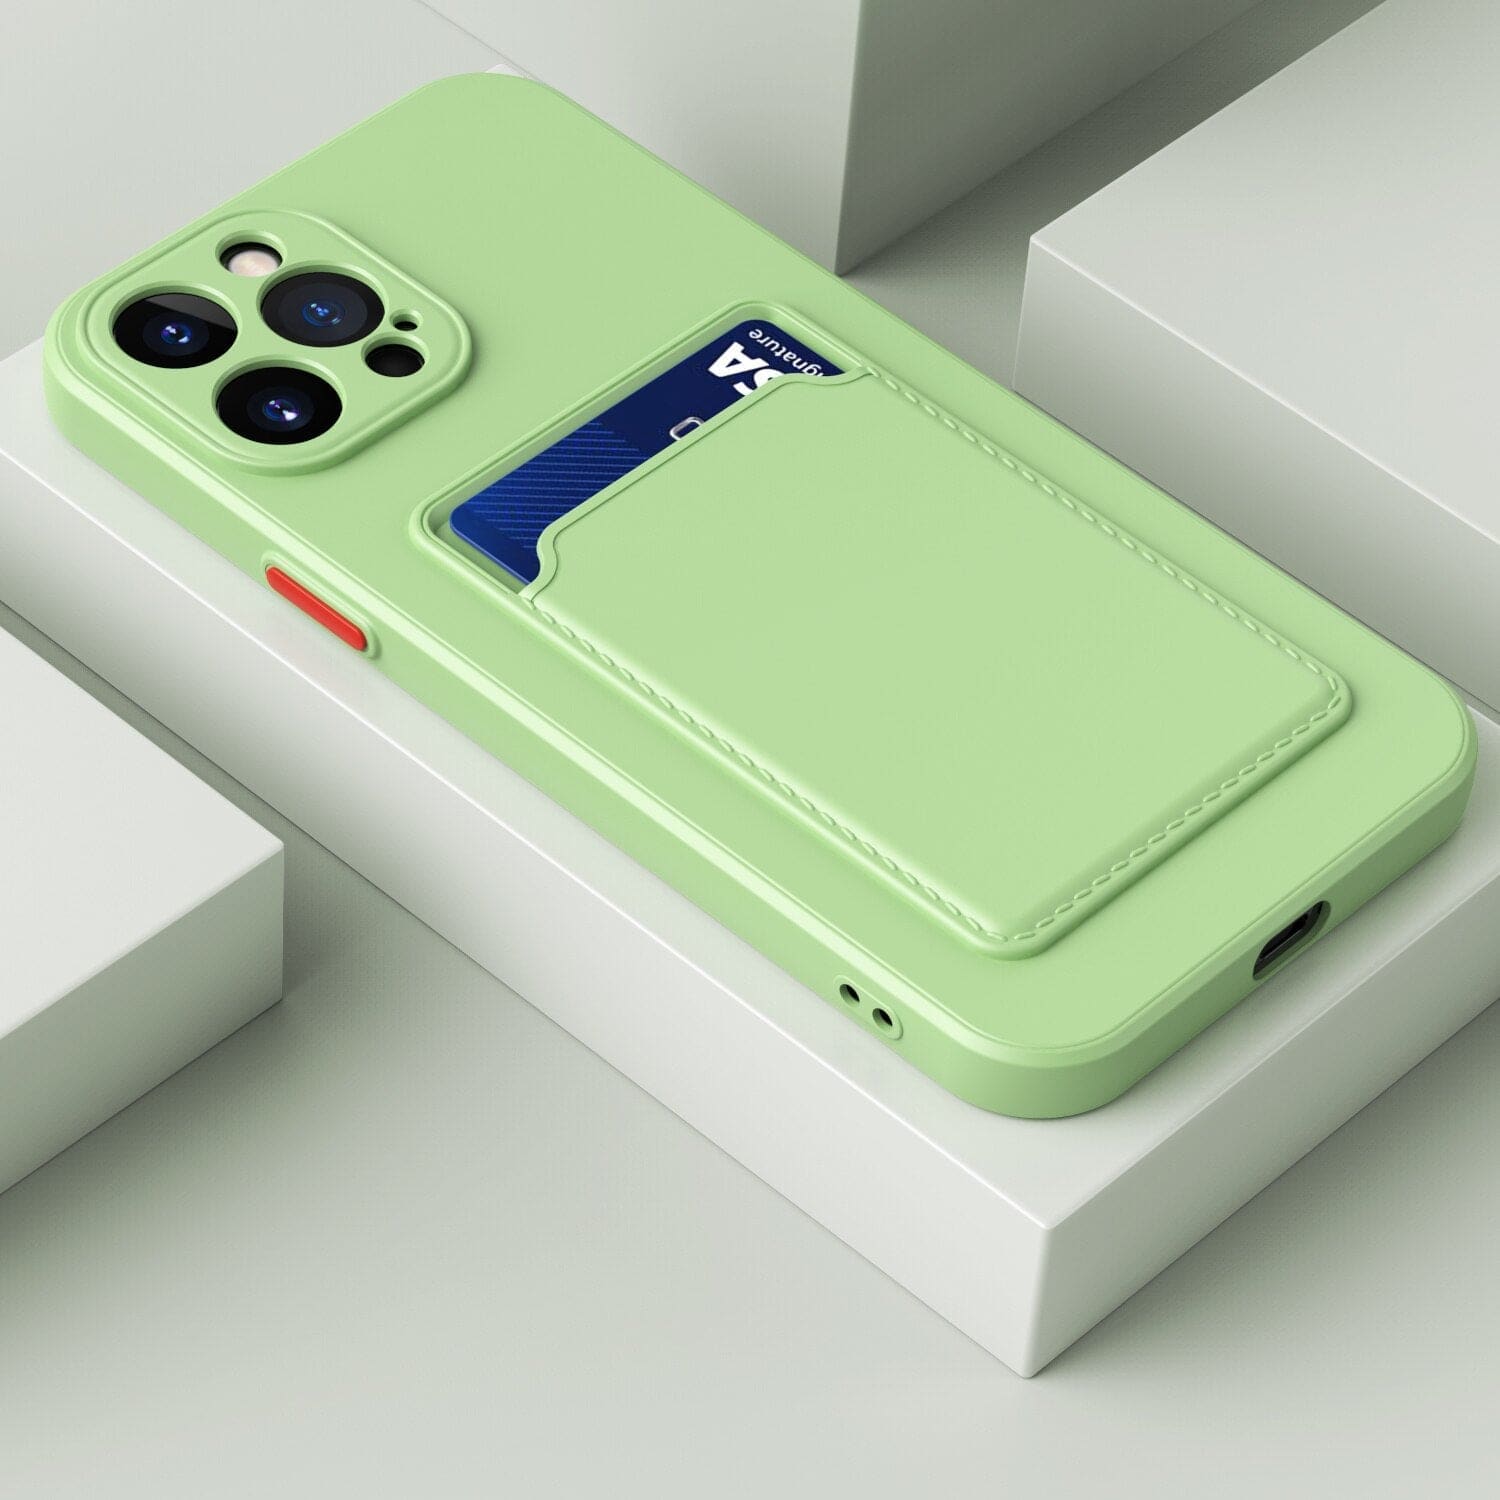 Silikon iPhone Schutzhülle mit Kartenhalter - Hellgrün / iPhone 12 mini - iPhone Schutzhülle